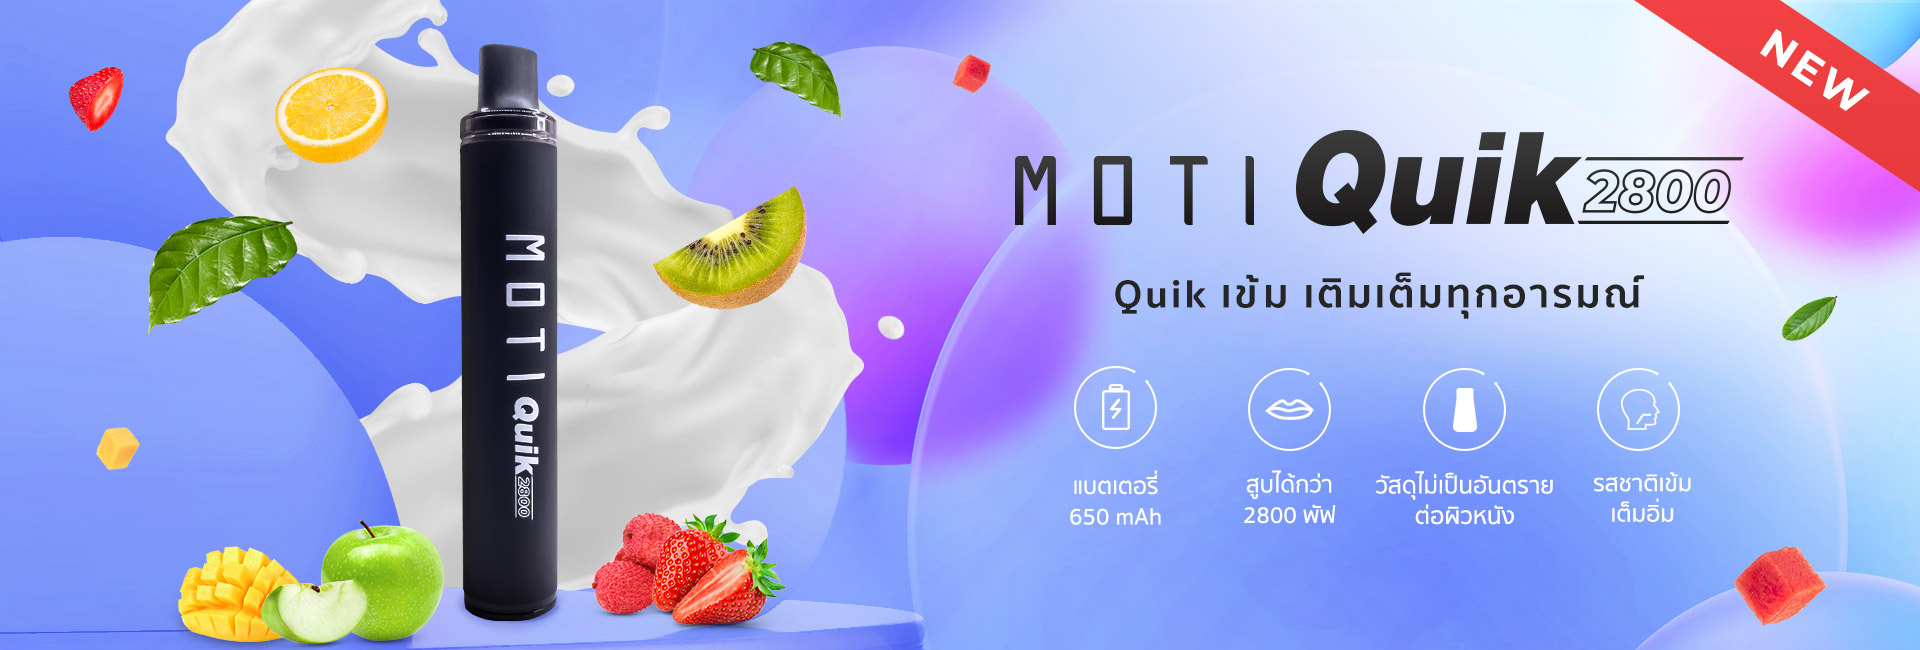 MOTI Quik motithailand.com โมติไทยแลนด์ บุหรี่ไฟฟ้า หัวน้ำยา Moti Slite vape #บุหร่าไฟฟี้ pods หัวน้ำยา ครบวงจร